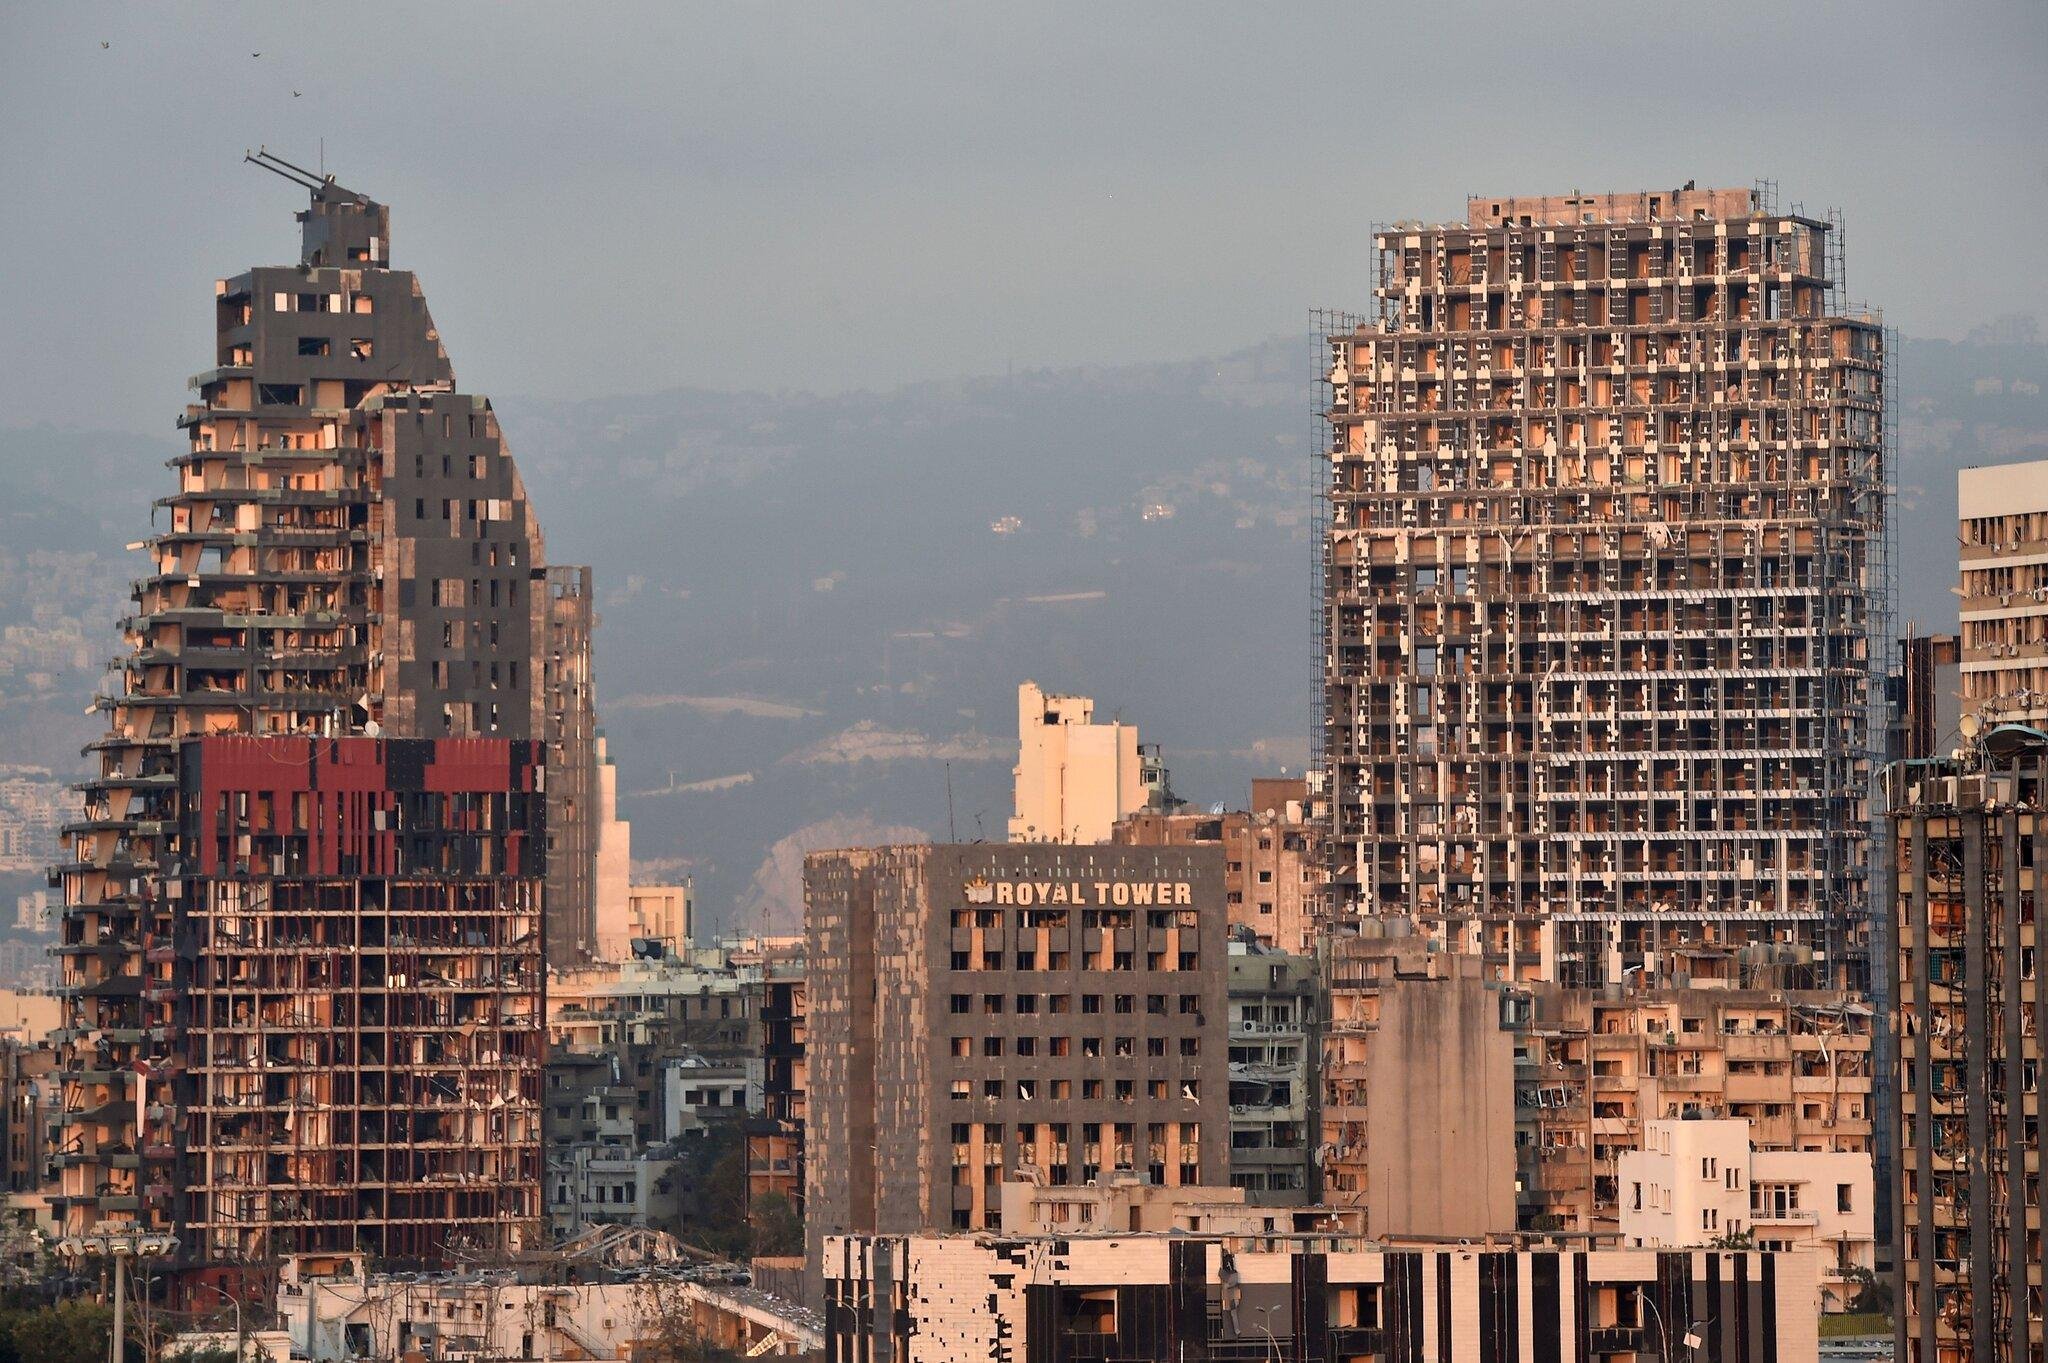 صور انفجار مرفأ بيروت لبنان انفجار نترات الأمونيوم